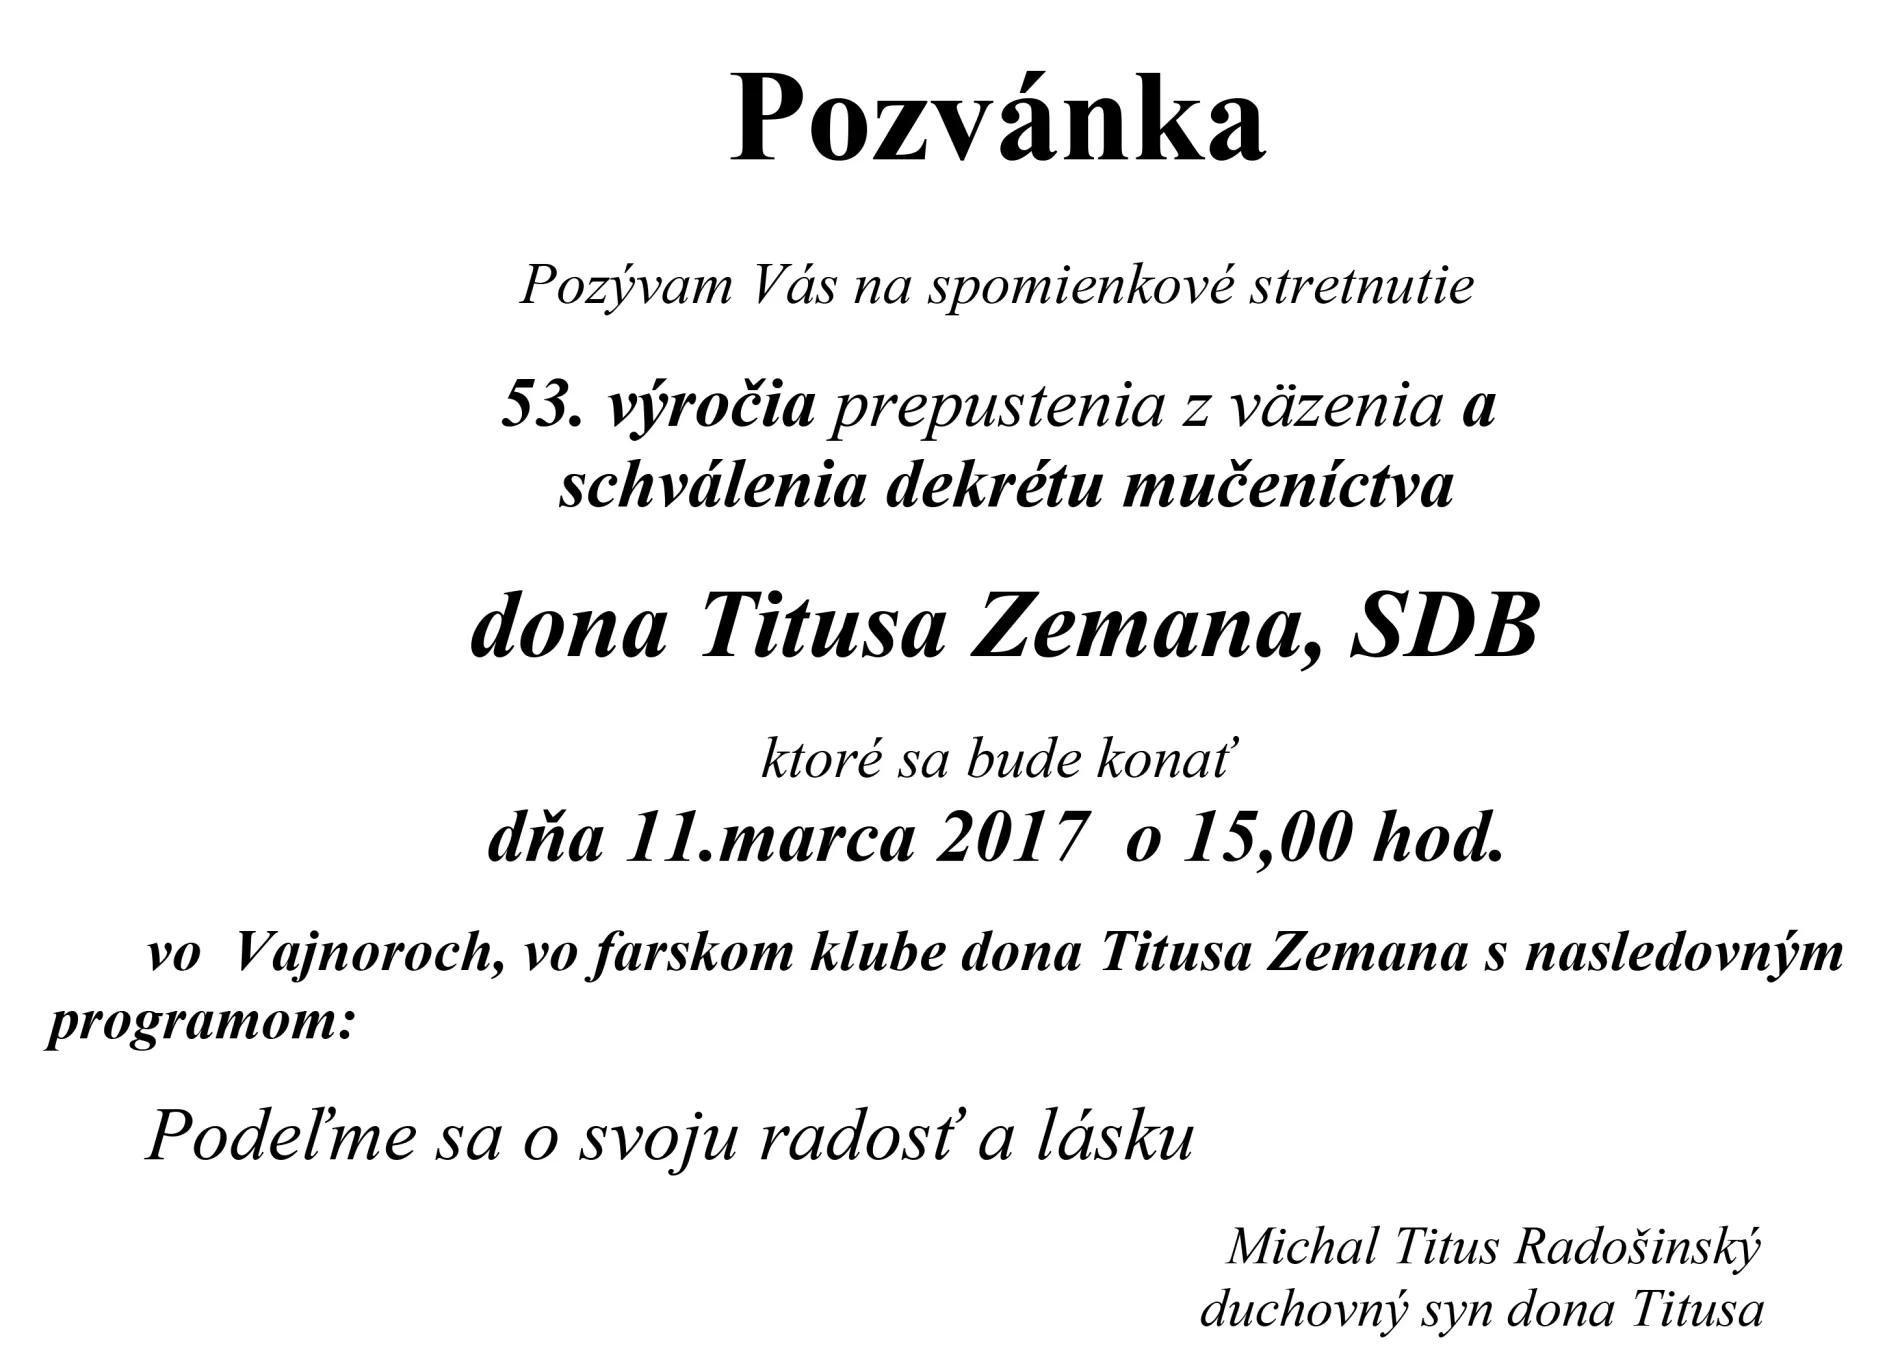 Pozývam Vás na spomienkové stretnutie Titus Zeman, SDB 11.marca 2017